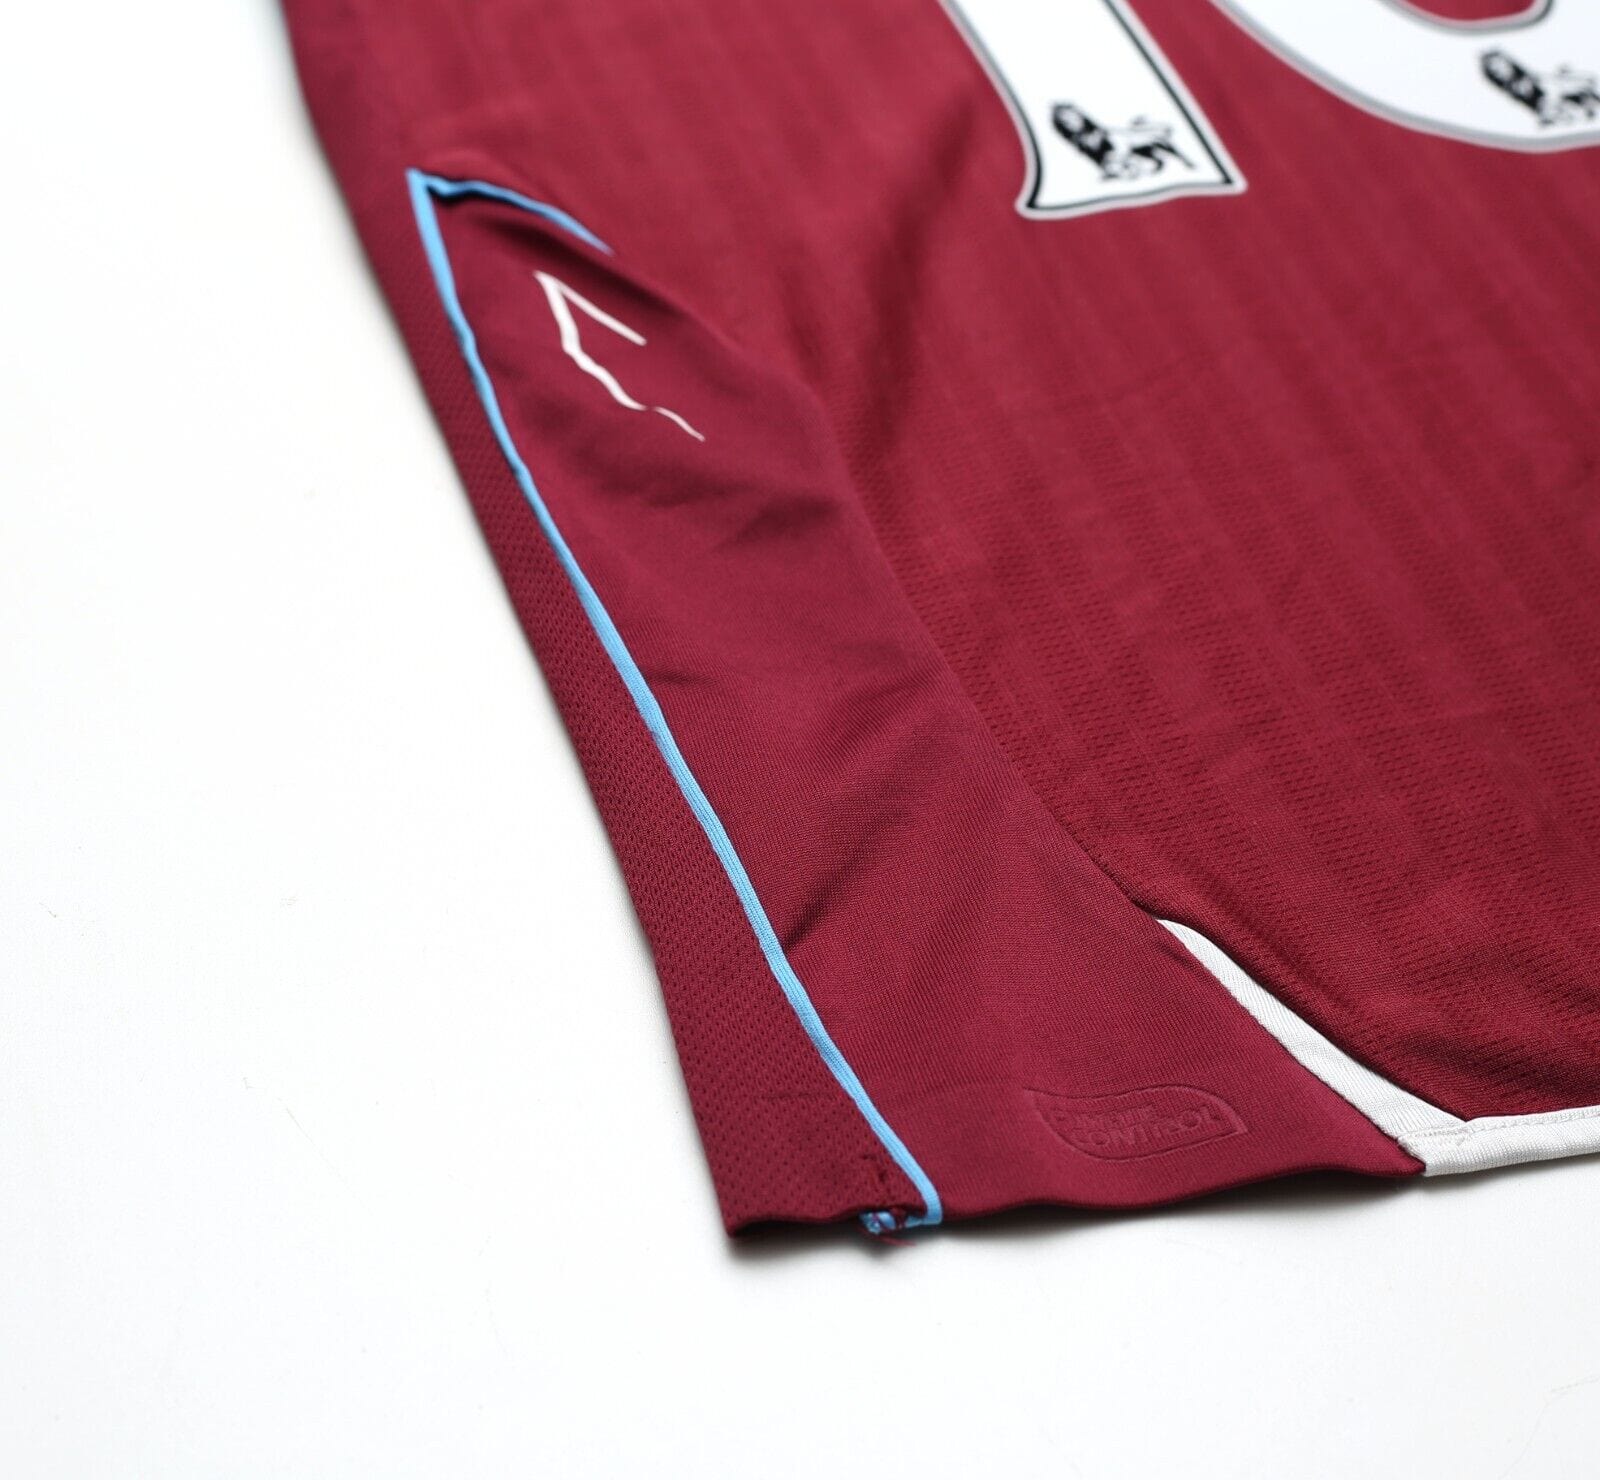 2007/08 NOBLE #16 West Ham United Vintage Umbro Football Shirt (S)